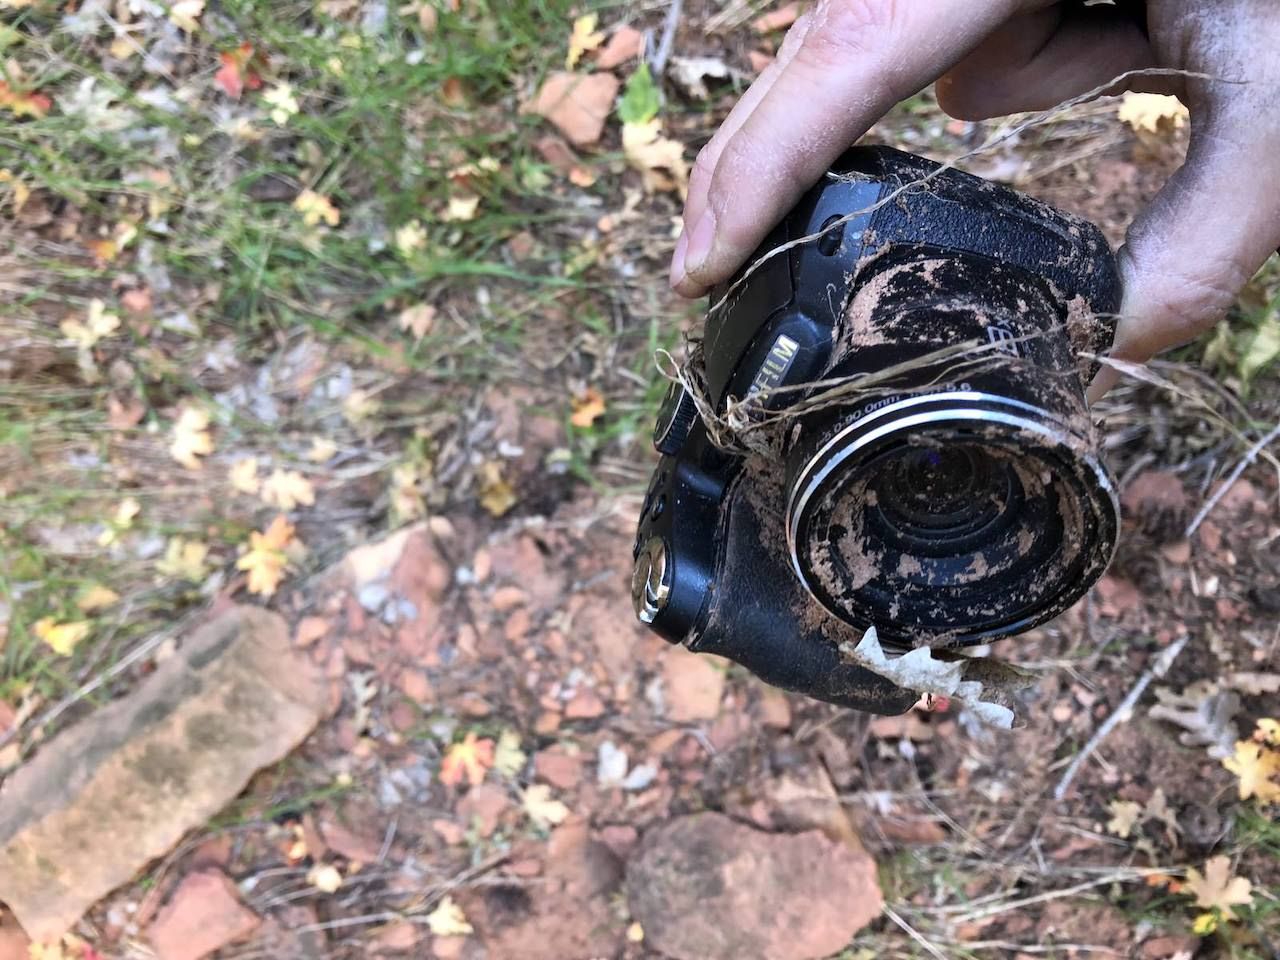 Camera found in Zion